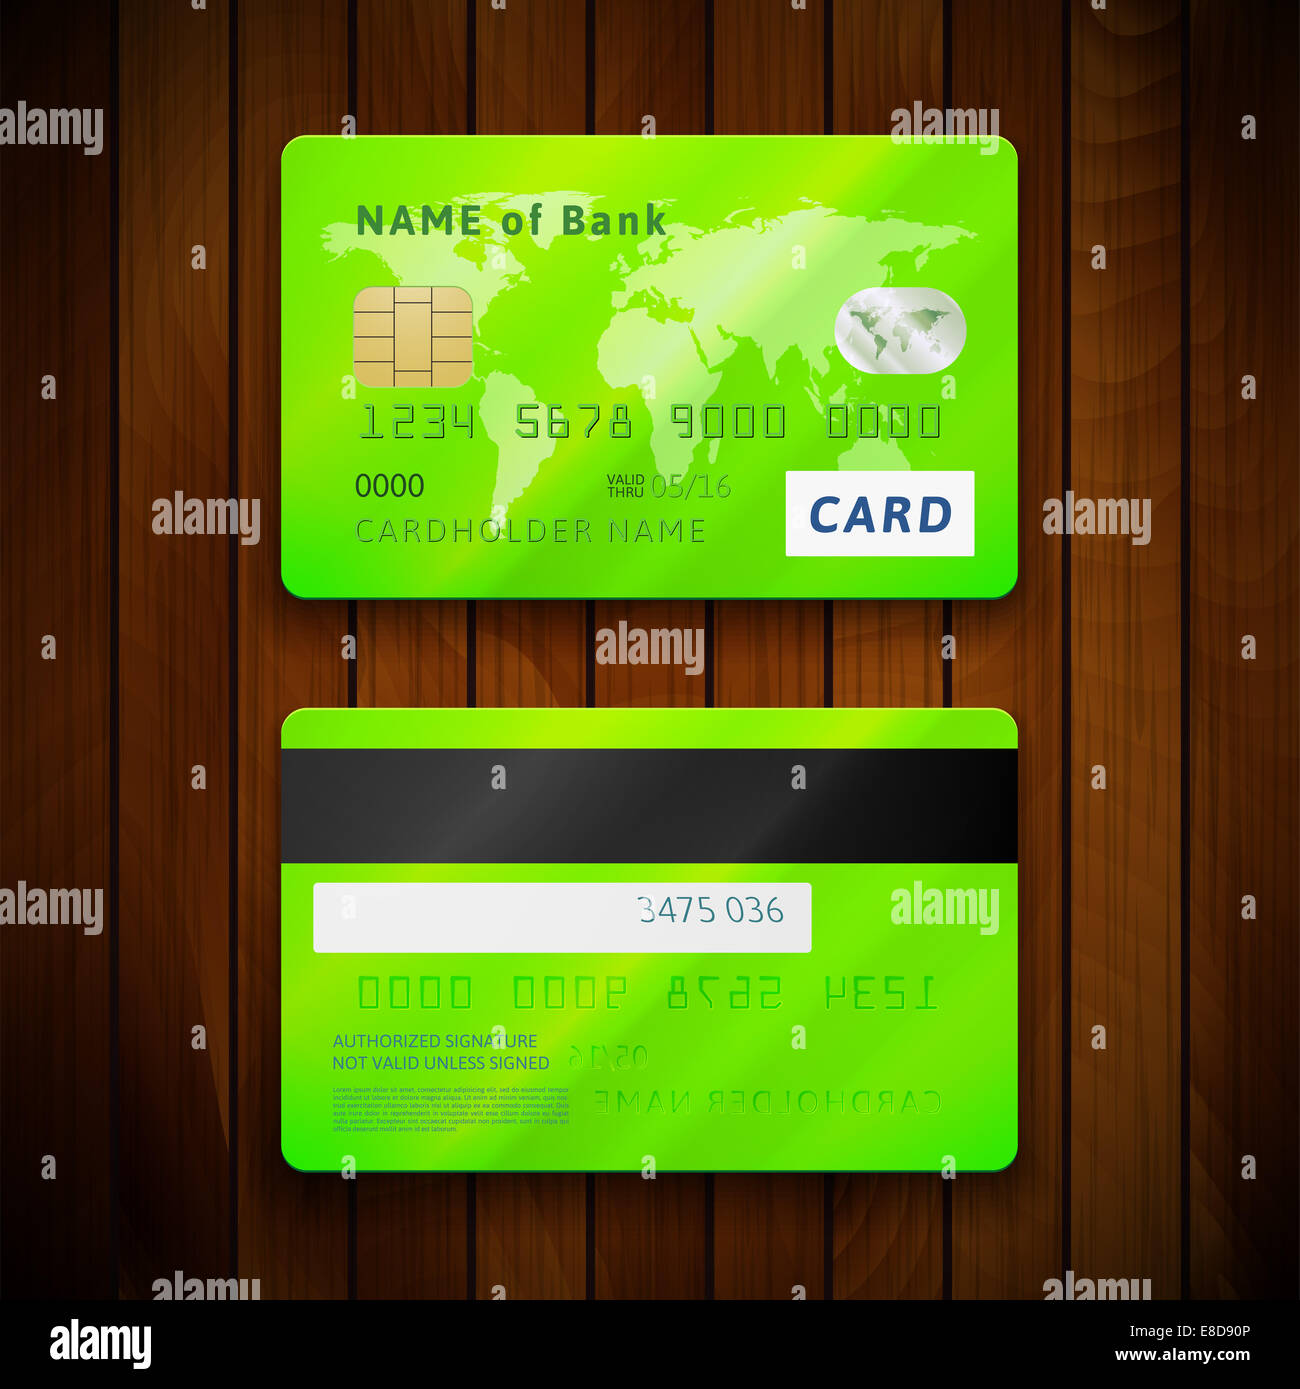 Банковская карта для доната. Банковская карта с двух сторон. Банеовская карат с двух сторон. Банковская карта с 2 сторон. Кредитная карта с двух сторон.